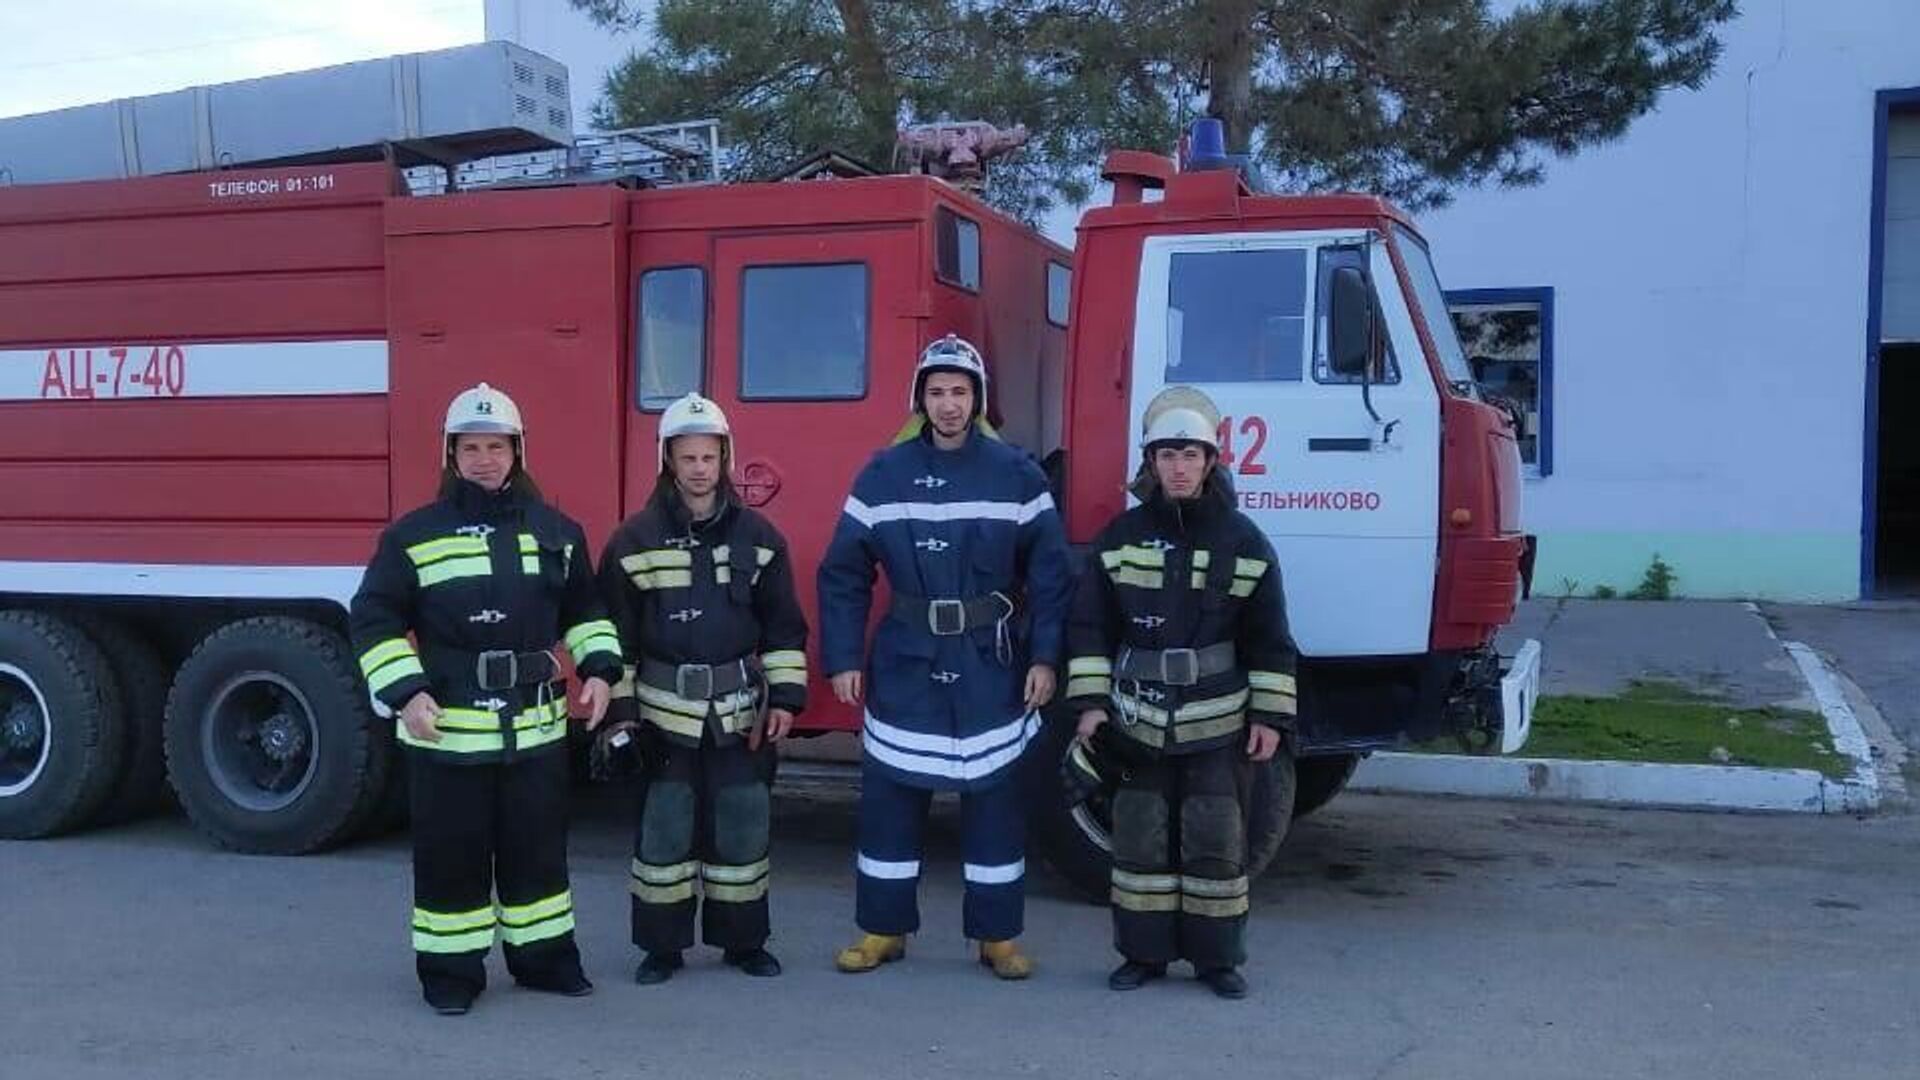 При пожаре в городе Котельниково огнеборцы спасли 4 детей - РИА Новости, 1920, 02.05.2021